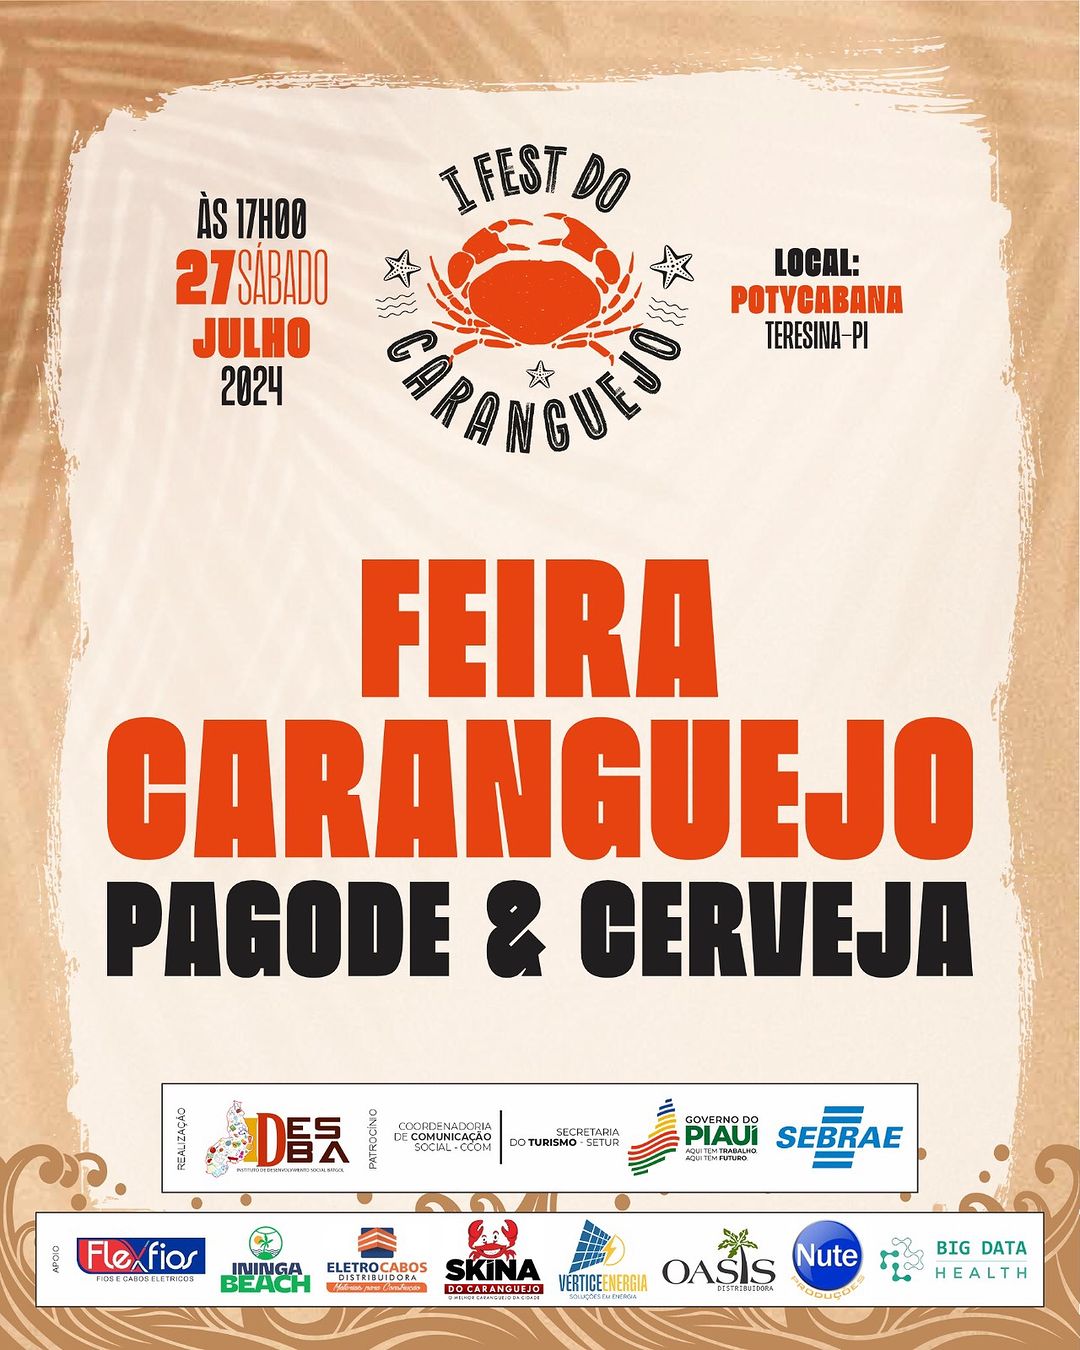 I Festival do Caranguejo